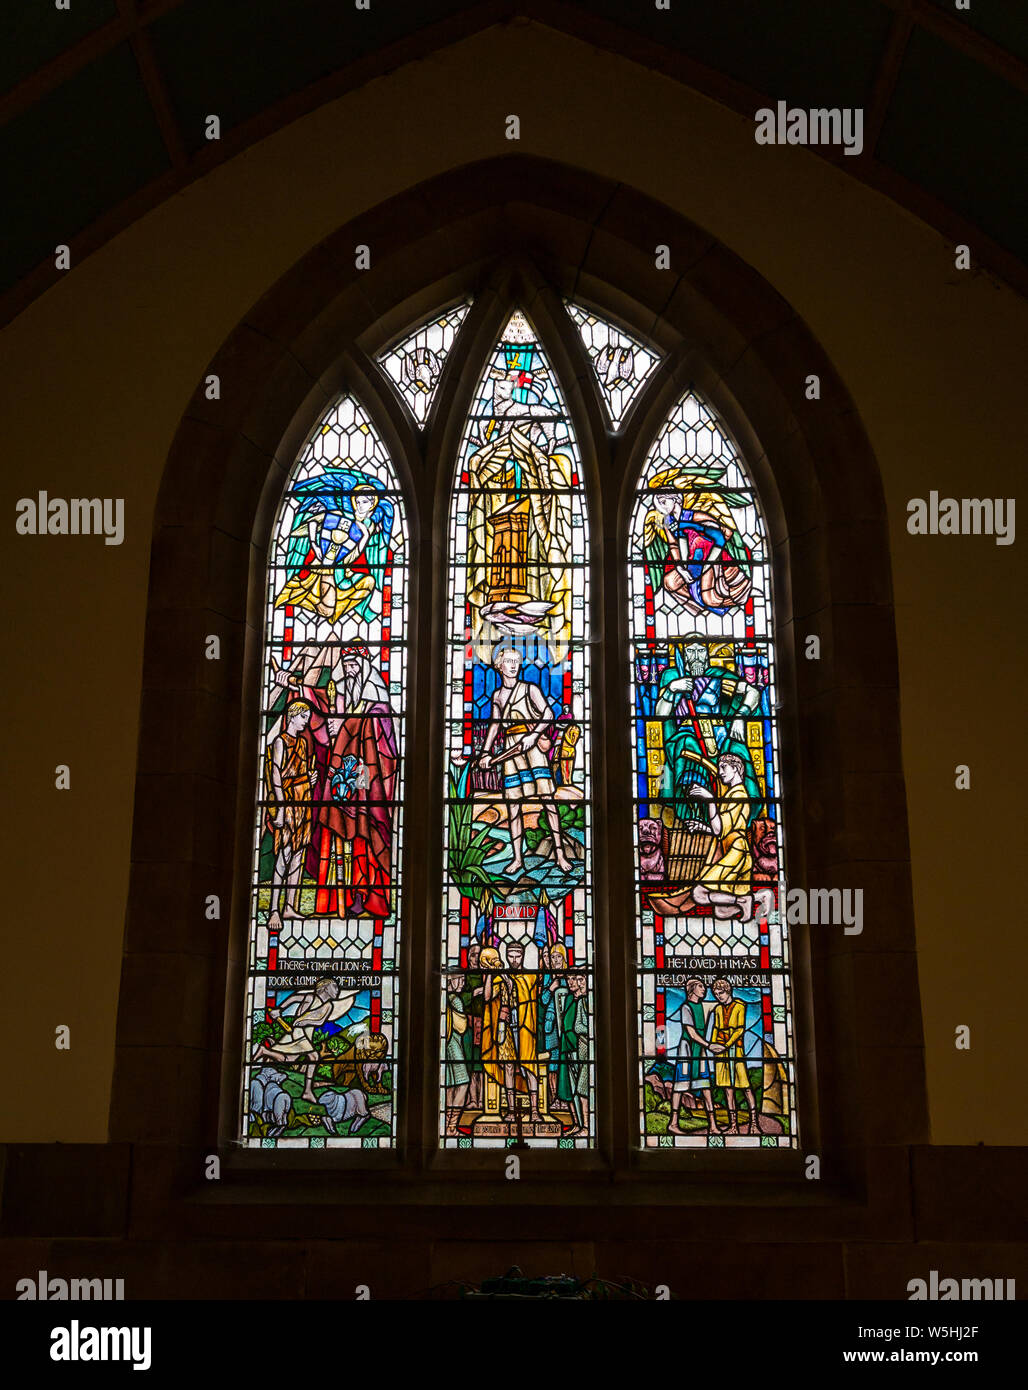 Vitraux religieux représentant la vie du roi David par Douglas Strachan, Église paroissiale de Humbie, East Lothian, Écosse, Royaume-Uni Banque D'Images